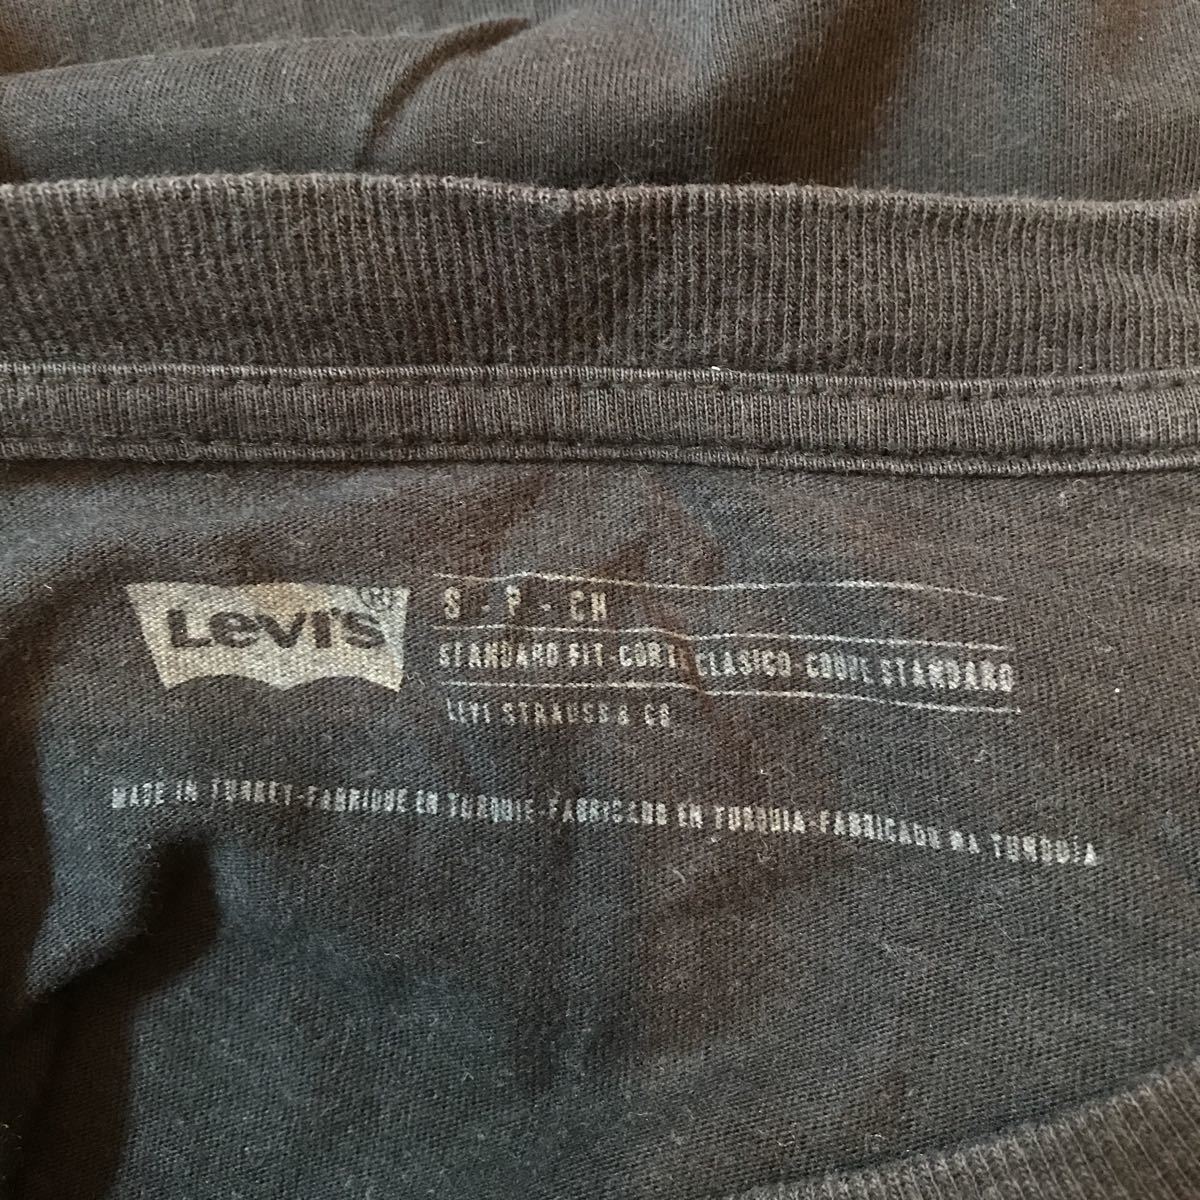  Levi's   футболка с коротким руковом  S 